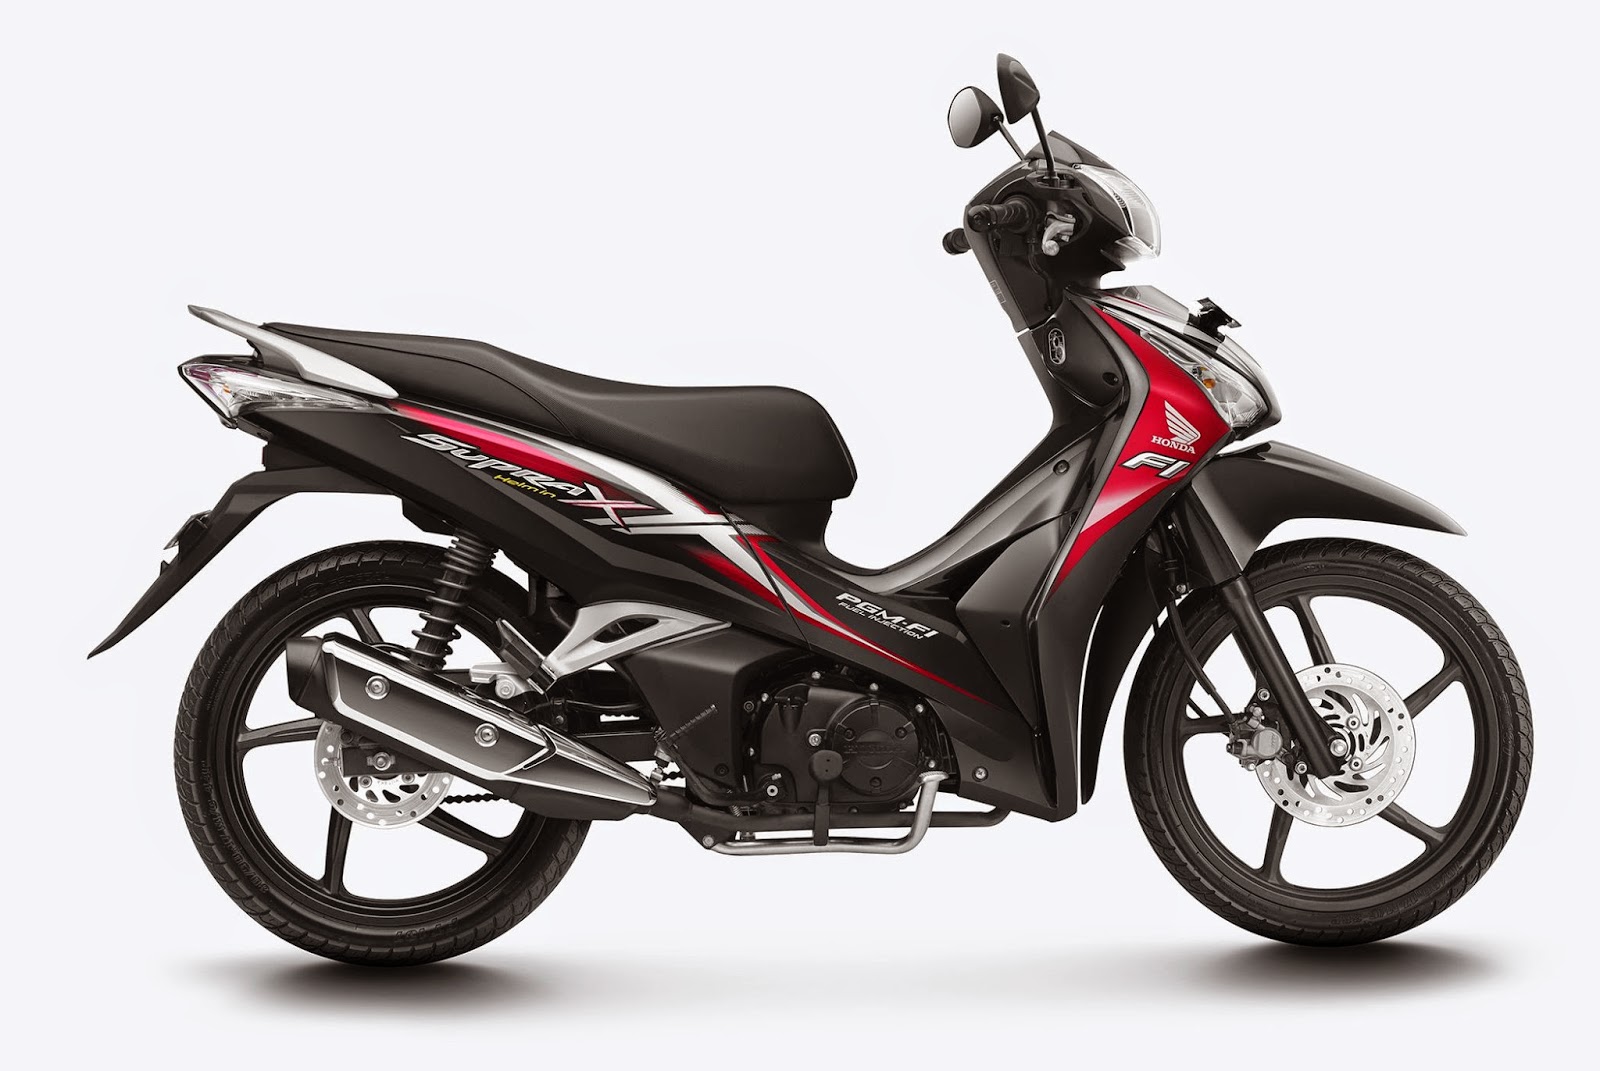 Harga dan Spesifikasi Honda Supra X 125 Helm in Terbaru